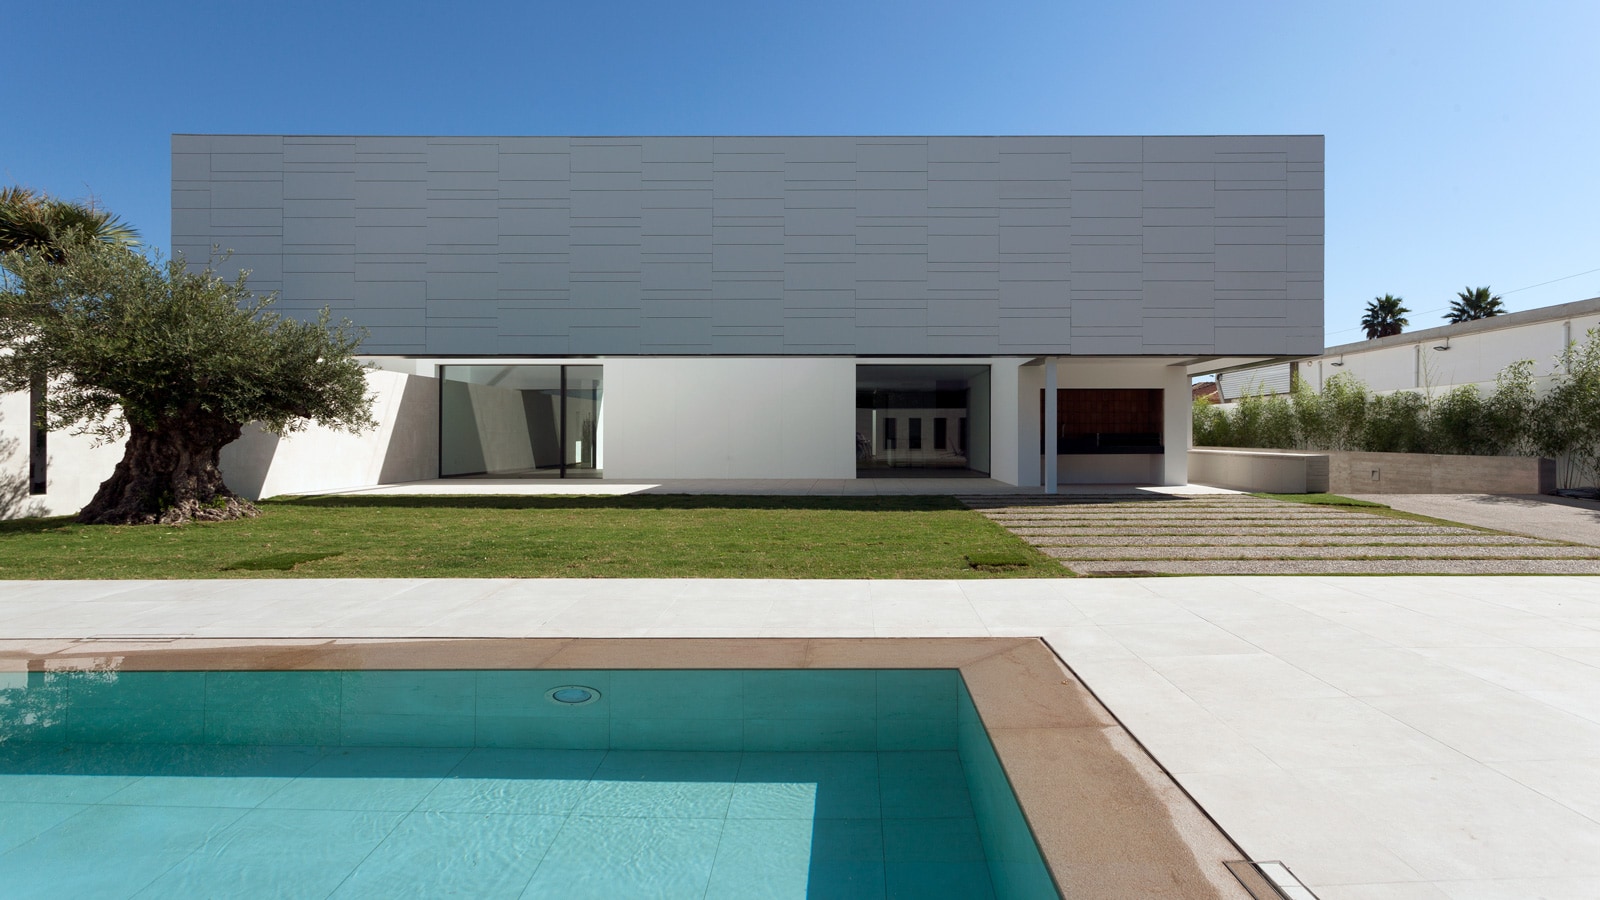 In questa casa di Alicante, Santatecla Arquitectos difende la purezza della geometria con le collezioni di Porcelanosa